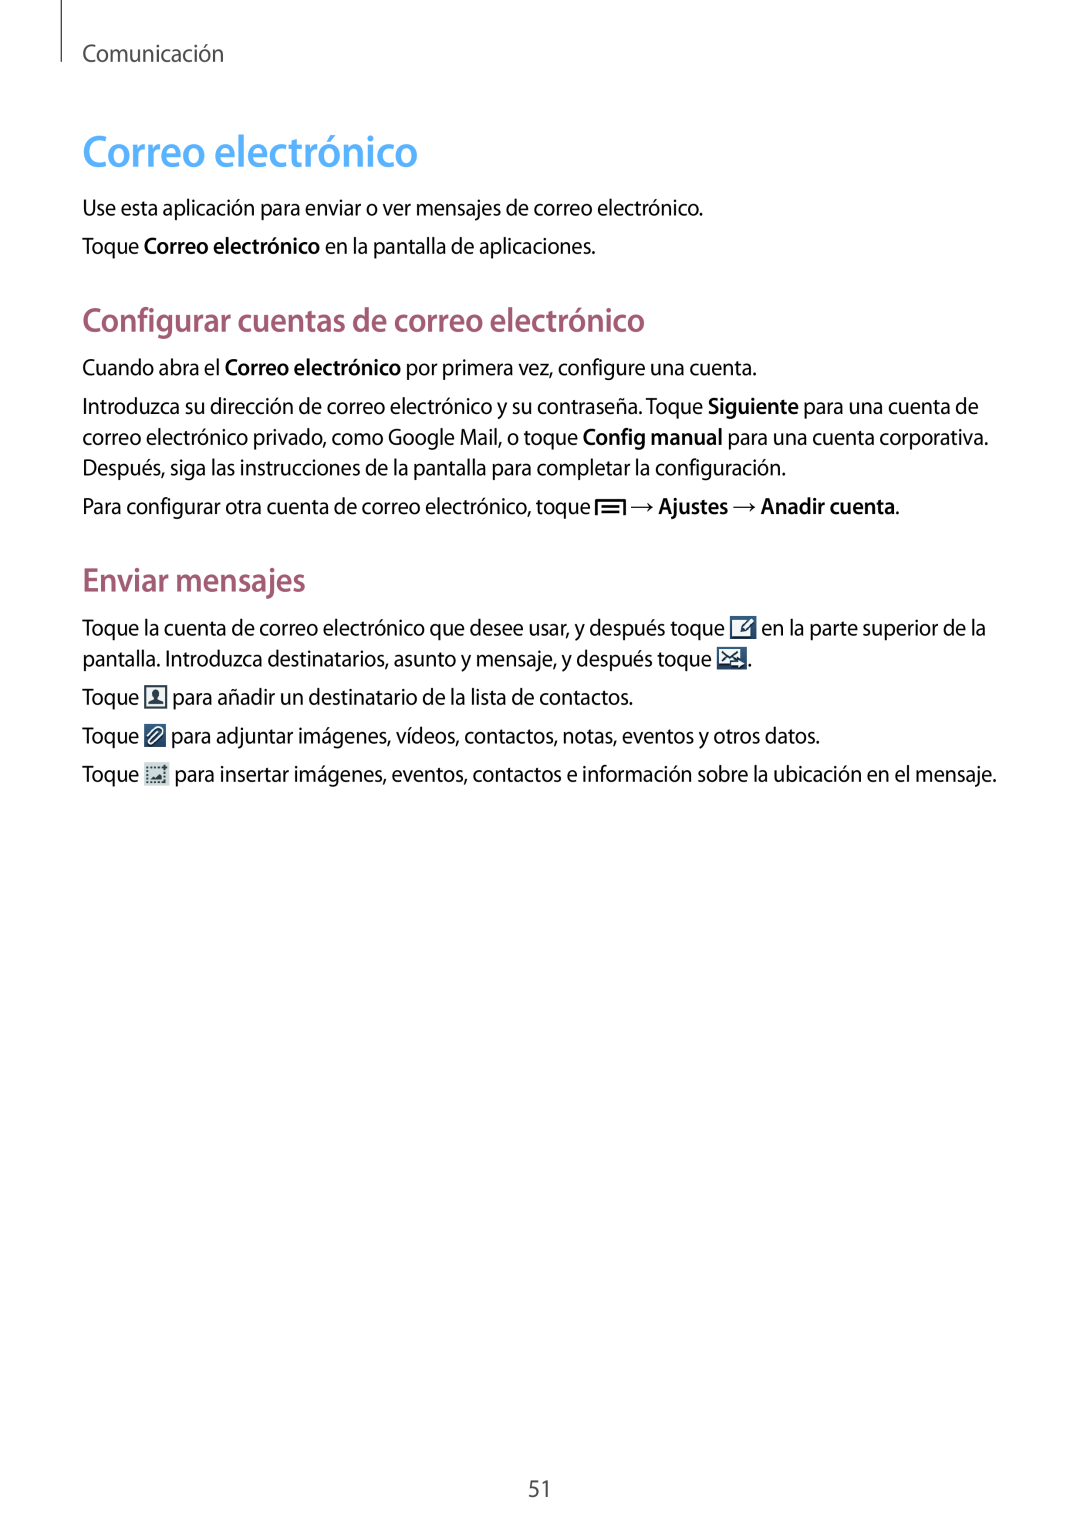 Samsung GT-I9105UANDBT manual Correo electrónico, Configurar cuentas de correo electrónico, Enviar mensajes, Comunicación 